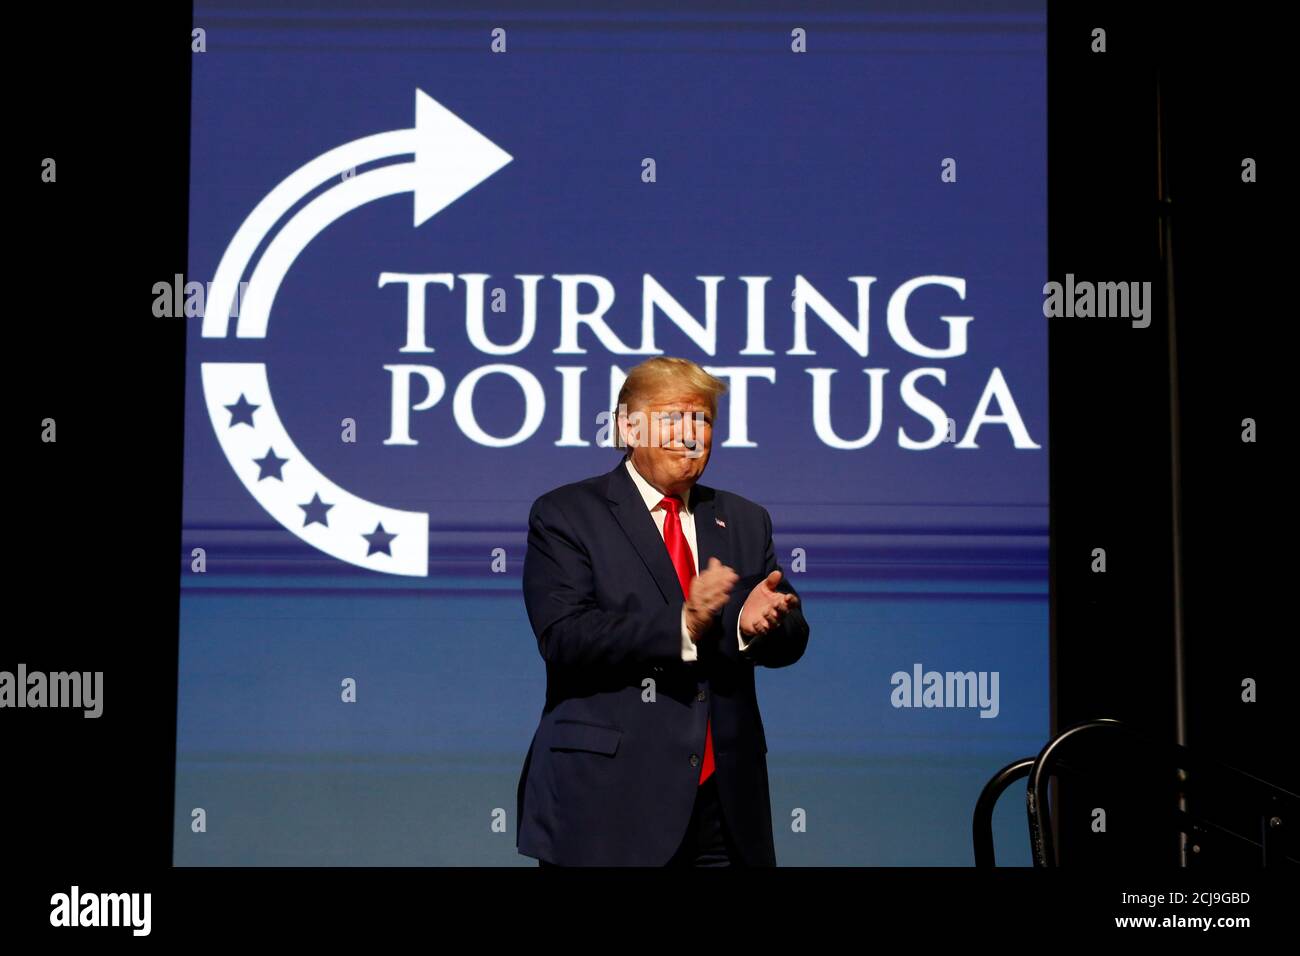 El presidente estadounidense Donald Trump hace comentarios en la Cumbre de Acción Estudiantil de Turning Point USA en el Centro de Convenciones del Condado de Palm Beach en West Palm Beach, Florida, EE.UU. 21 de diciembre de 2019. REUTERS/Marco Bello Foto de stock